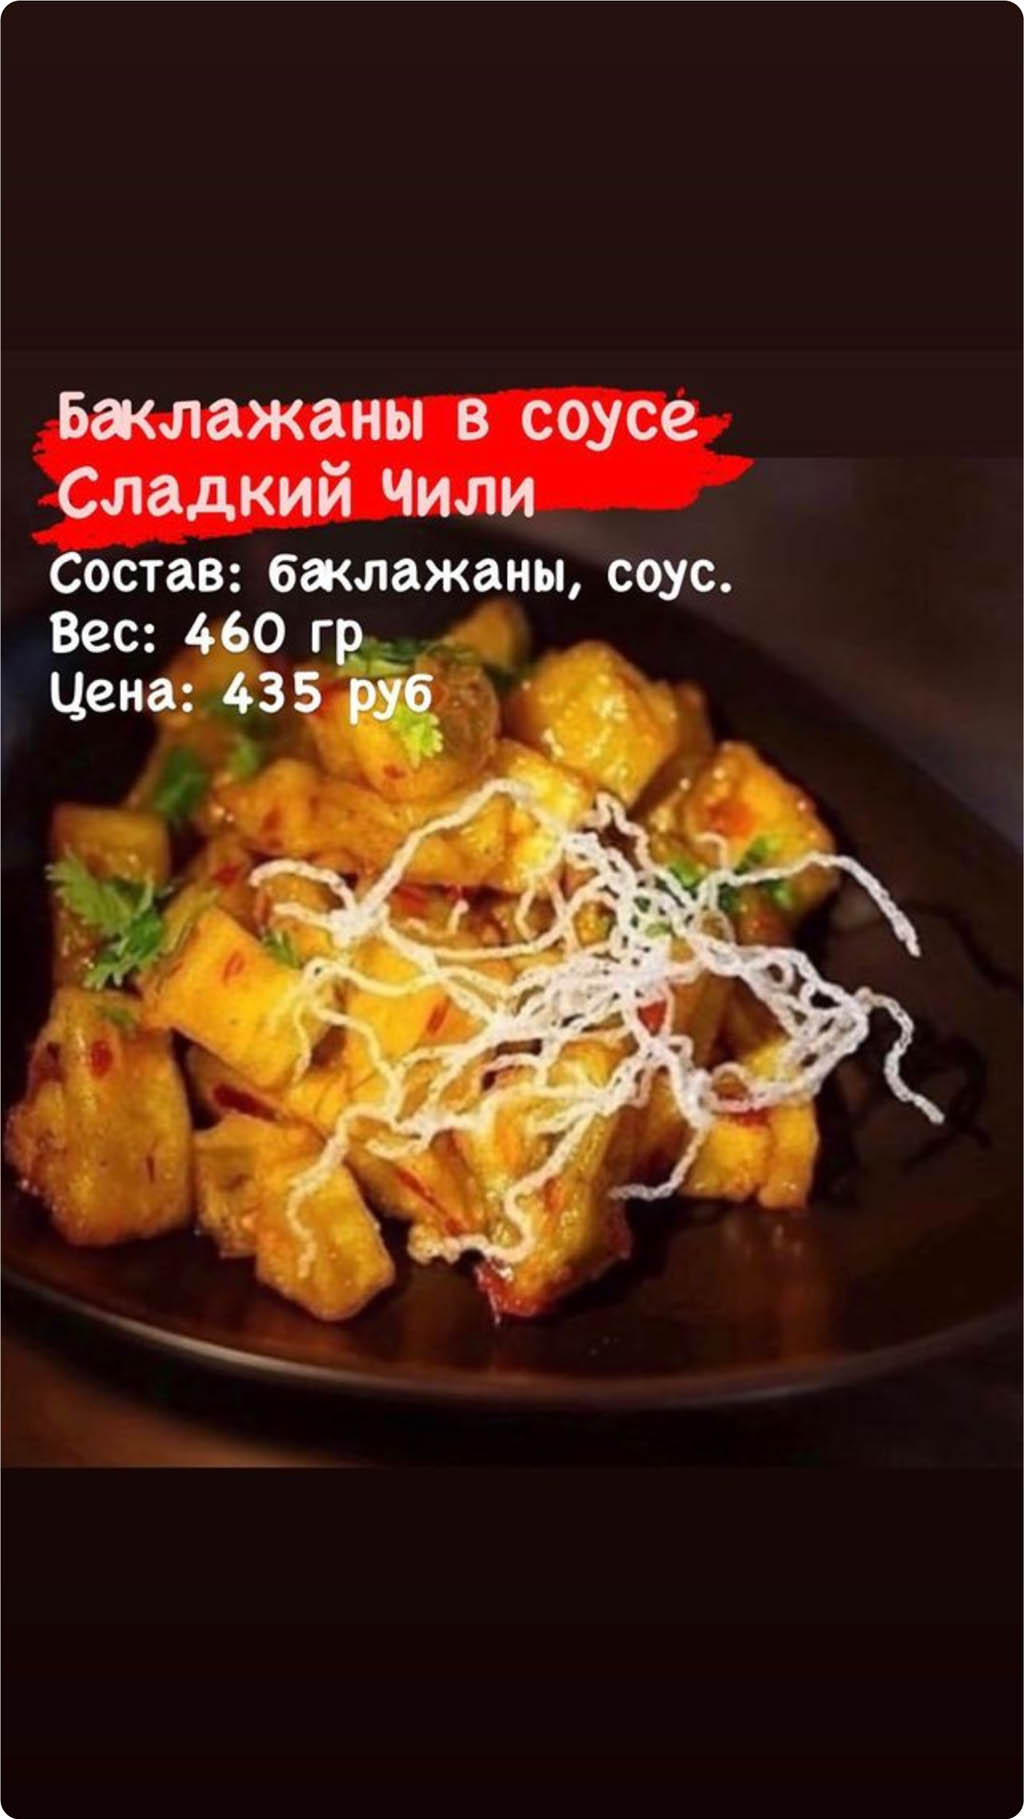 Арсеньев Sushi & Wok меню цены официальный сайт